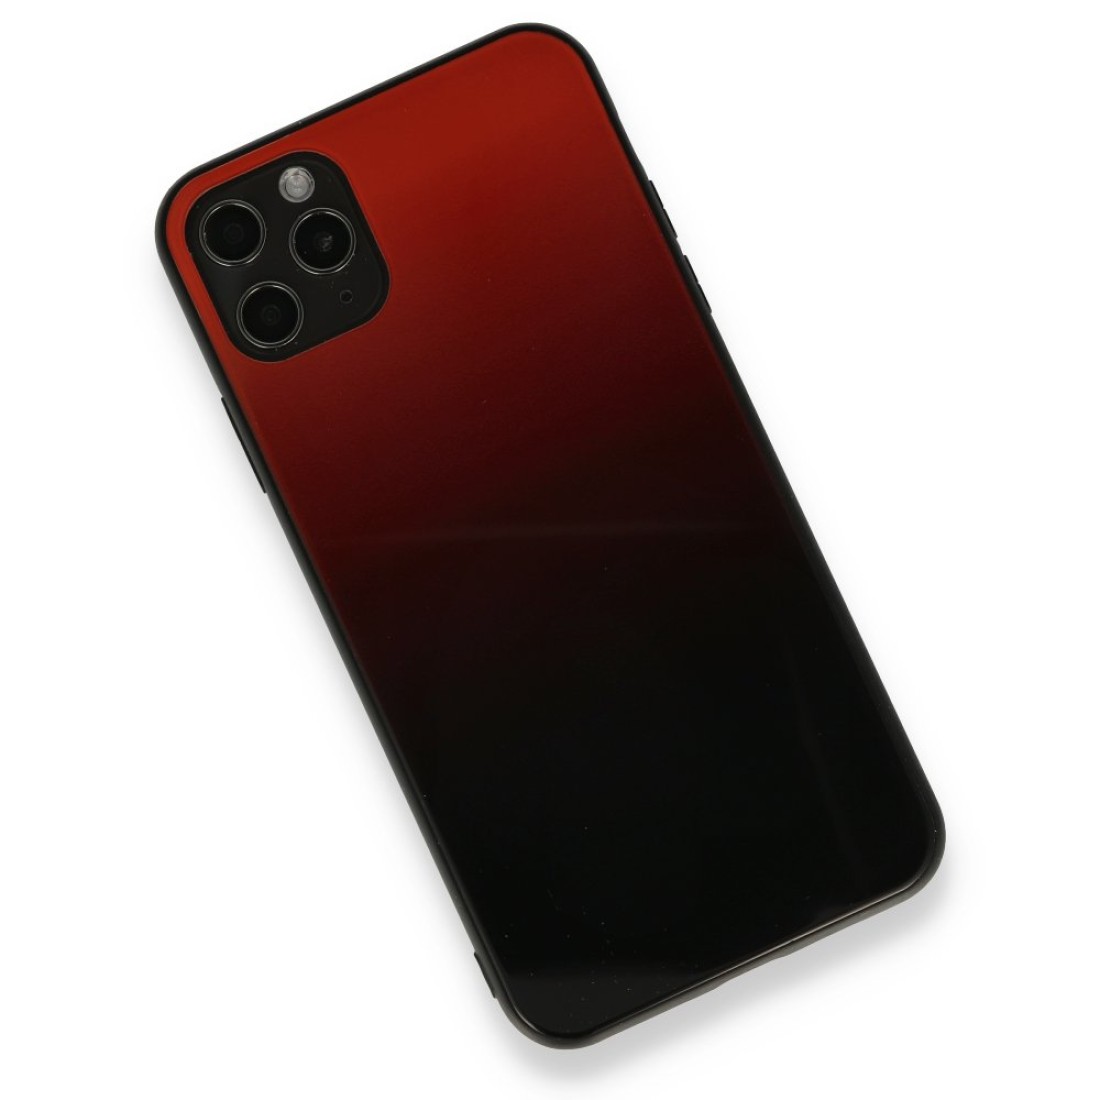 Apple iPhone 11 Pro Max Kılıf Grady Silikon - Kırmızı-Siyah